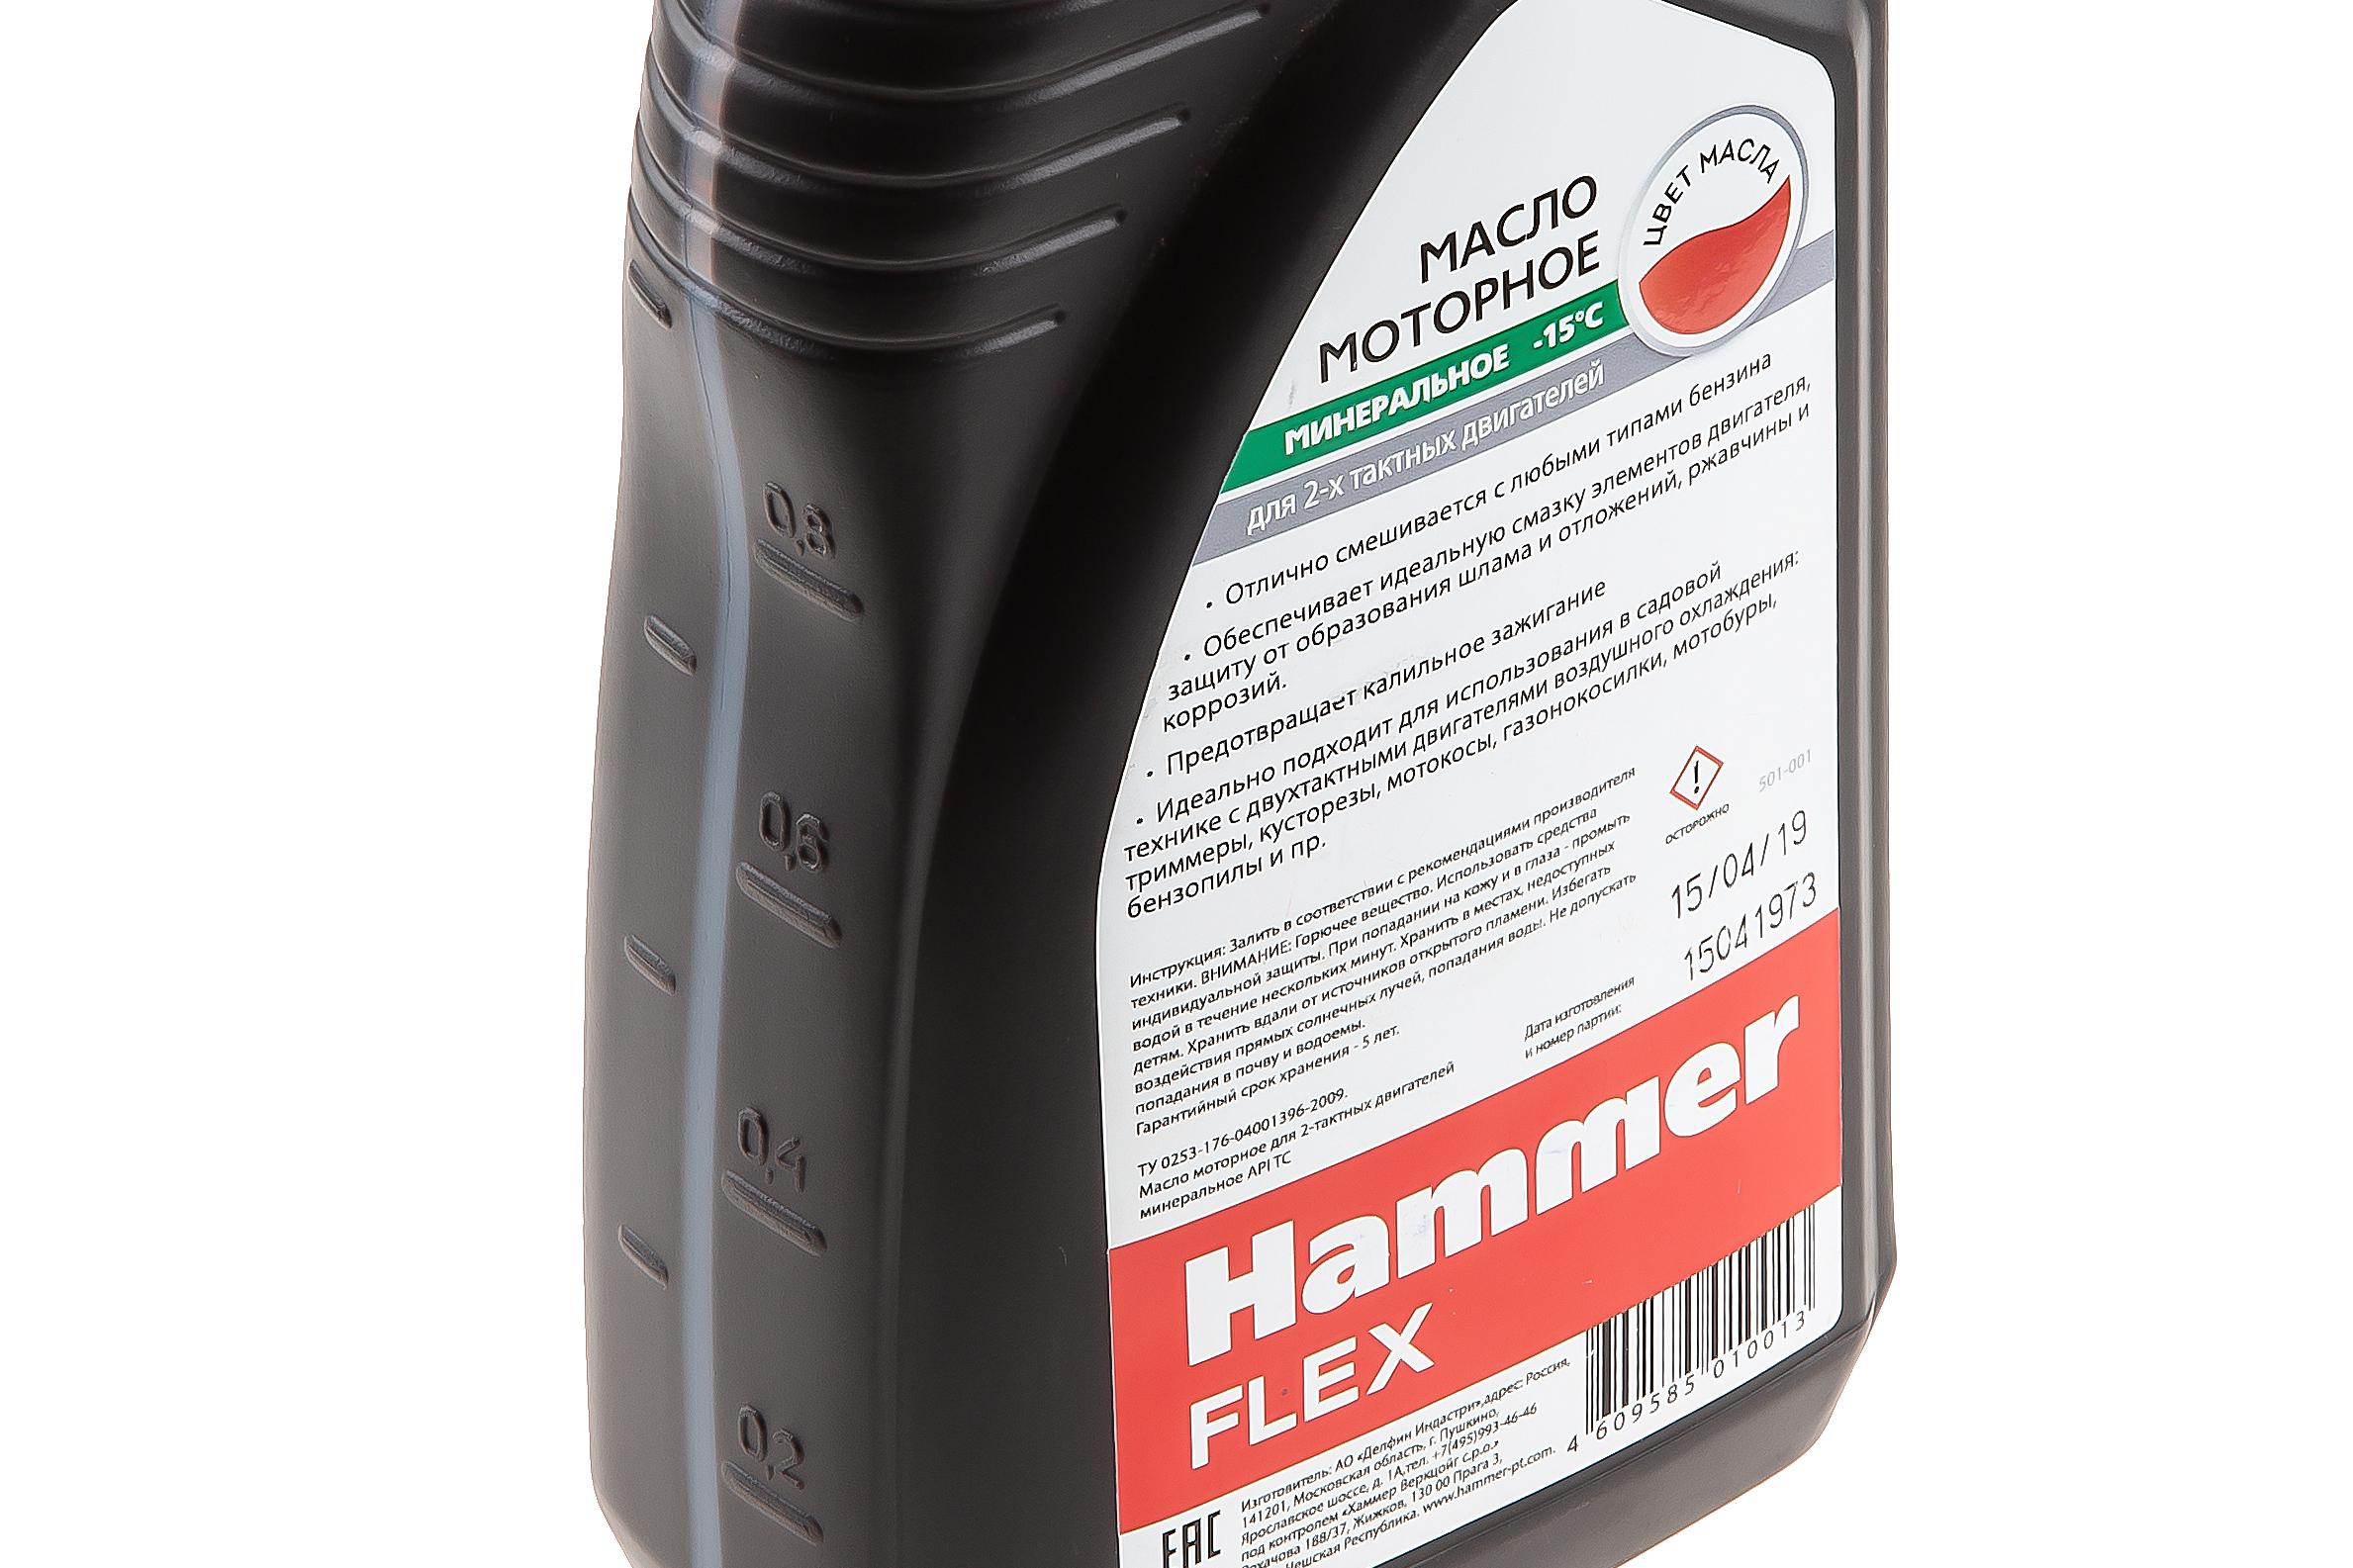 Масло флекс. Hammer Flex масло для двухтактных двигателей 501.04. Масло моторное Hammer Flex. Hammer Flex масло для двухтактных двигателей. Масло API TC для двухтактных двигателей Hammer.